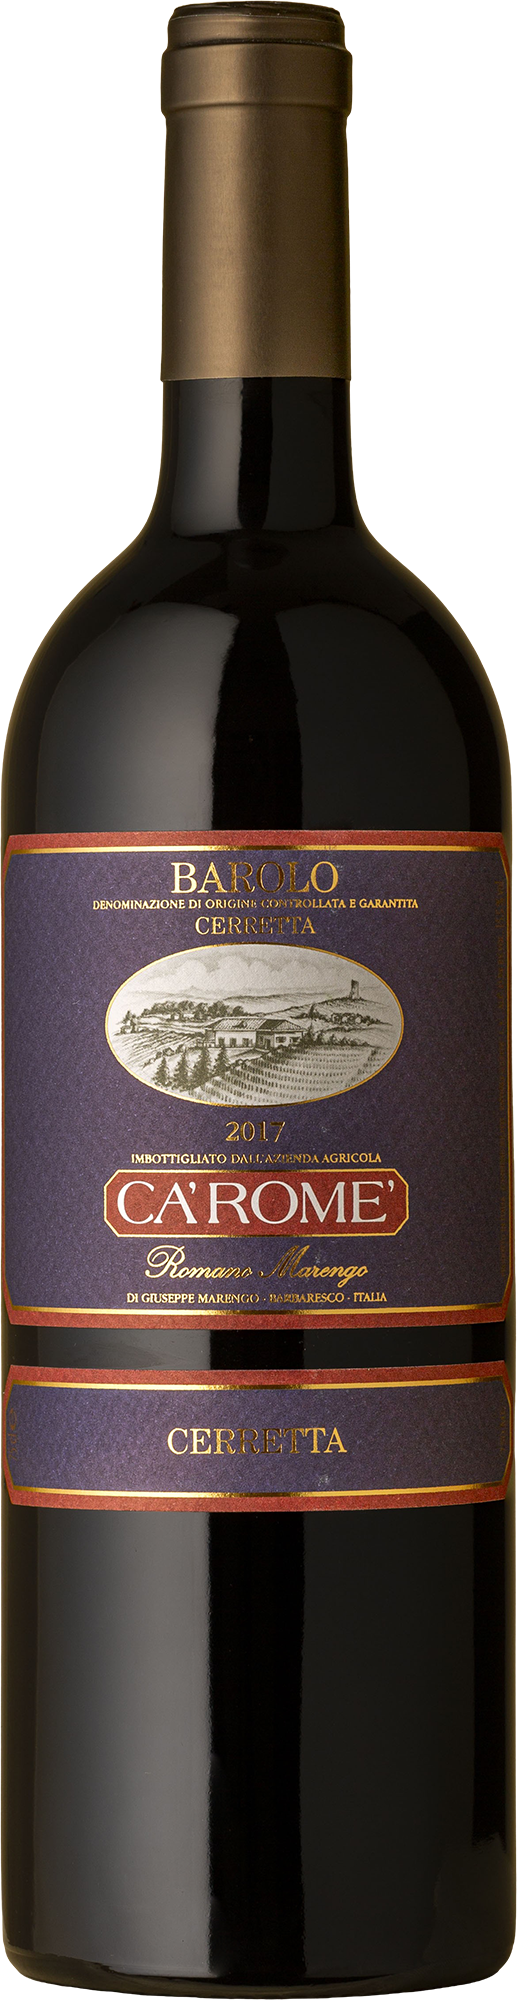 Ca'Rome - Barolo Cerretta Nebbiolo 2017 Red Wine